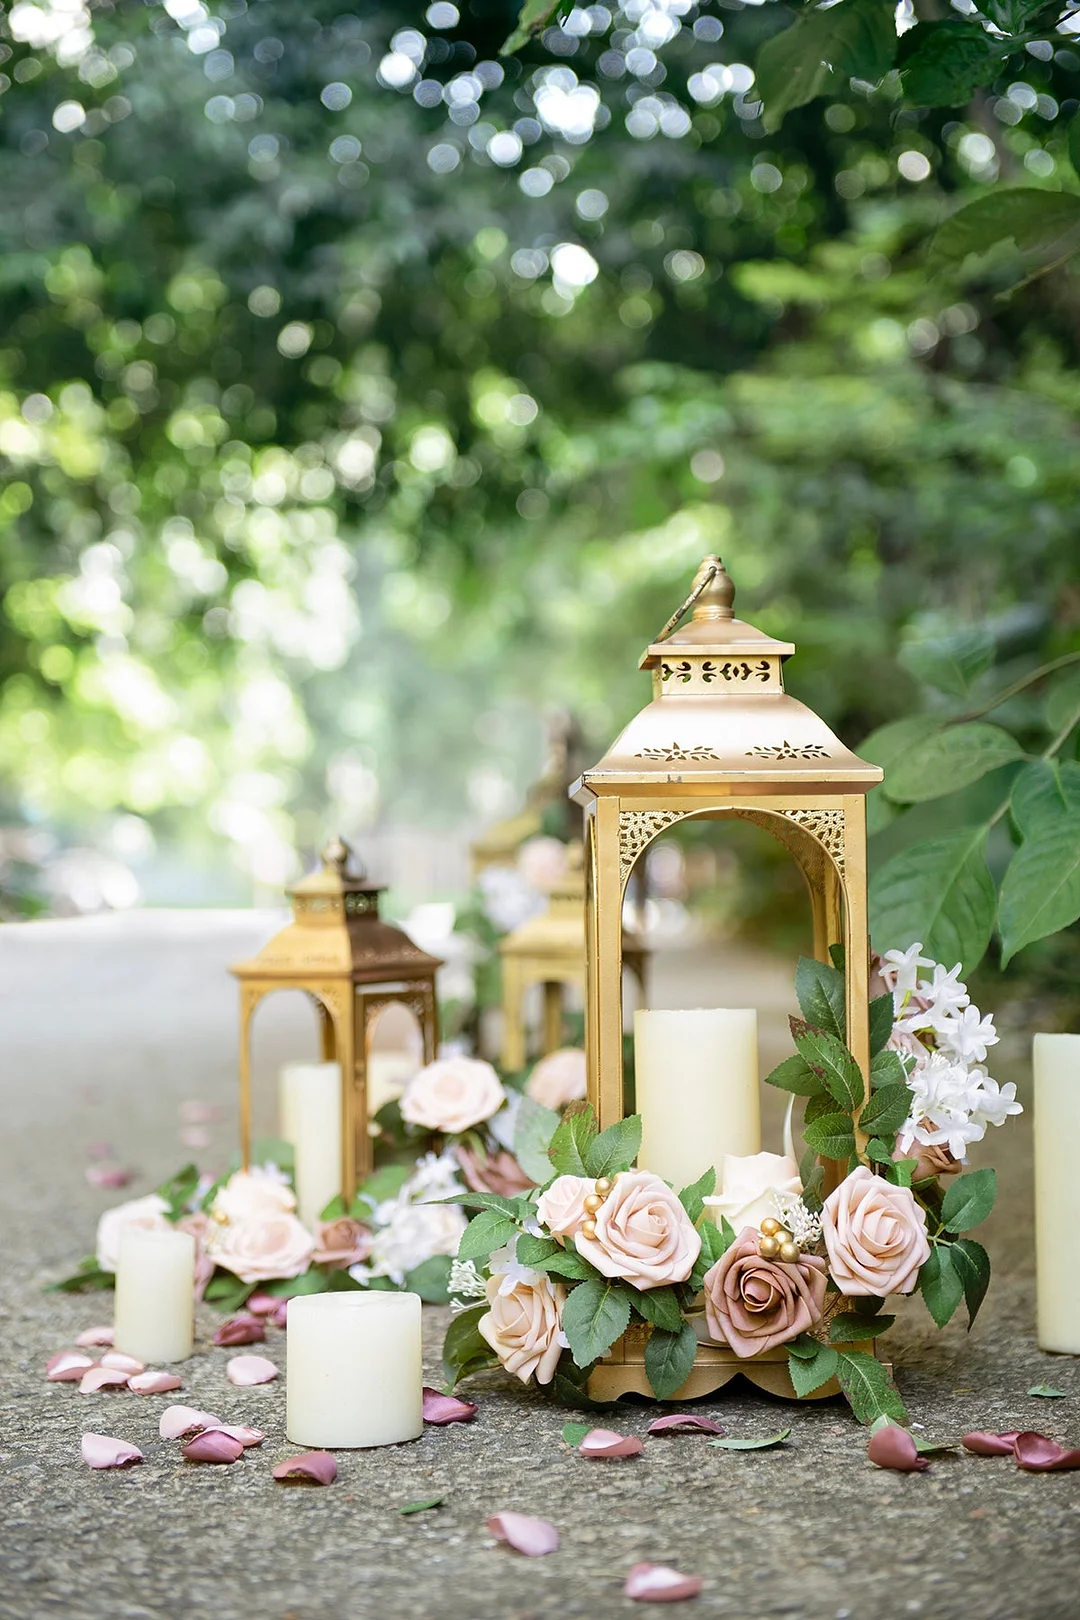 Lantern Floral Arrangements in Blush & Cream